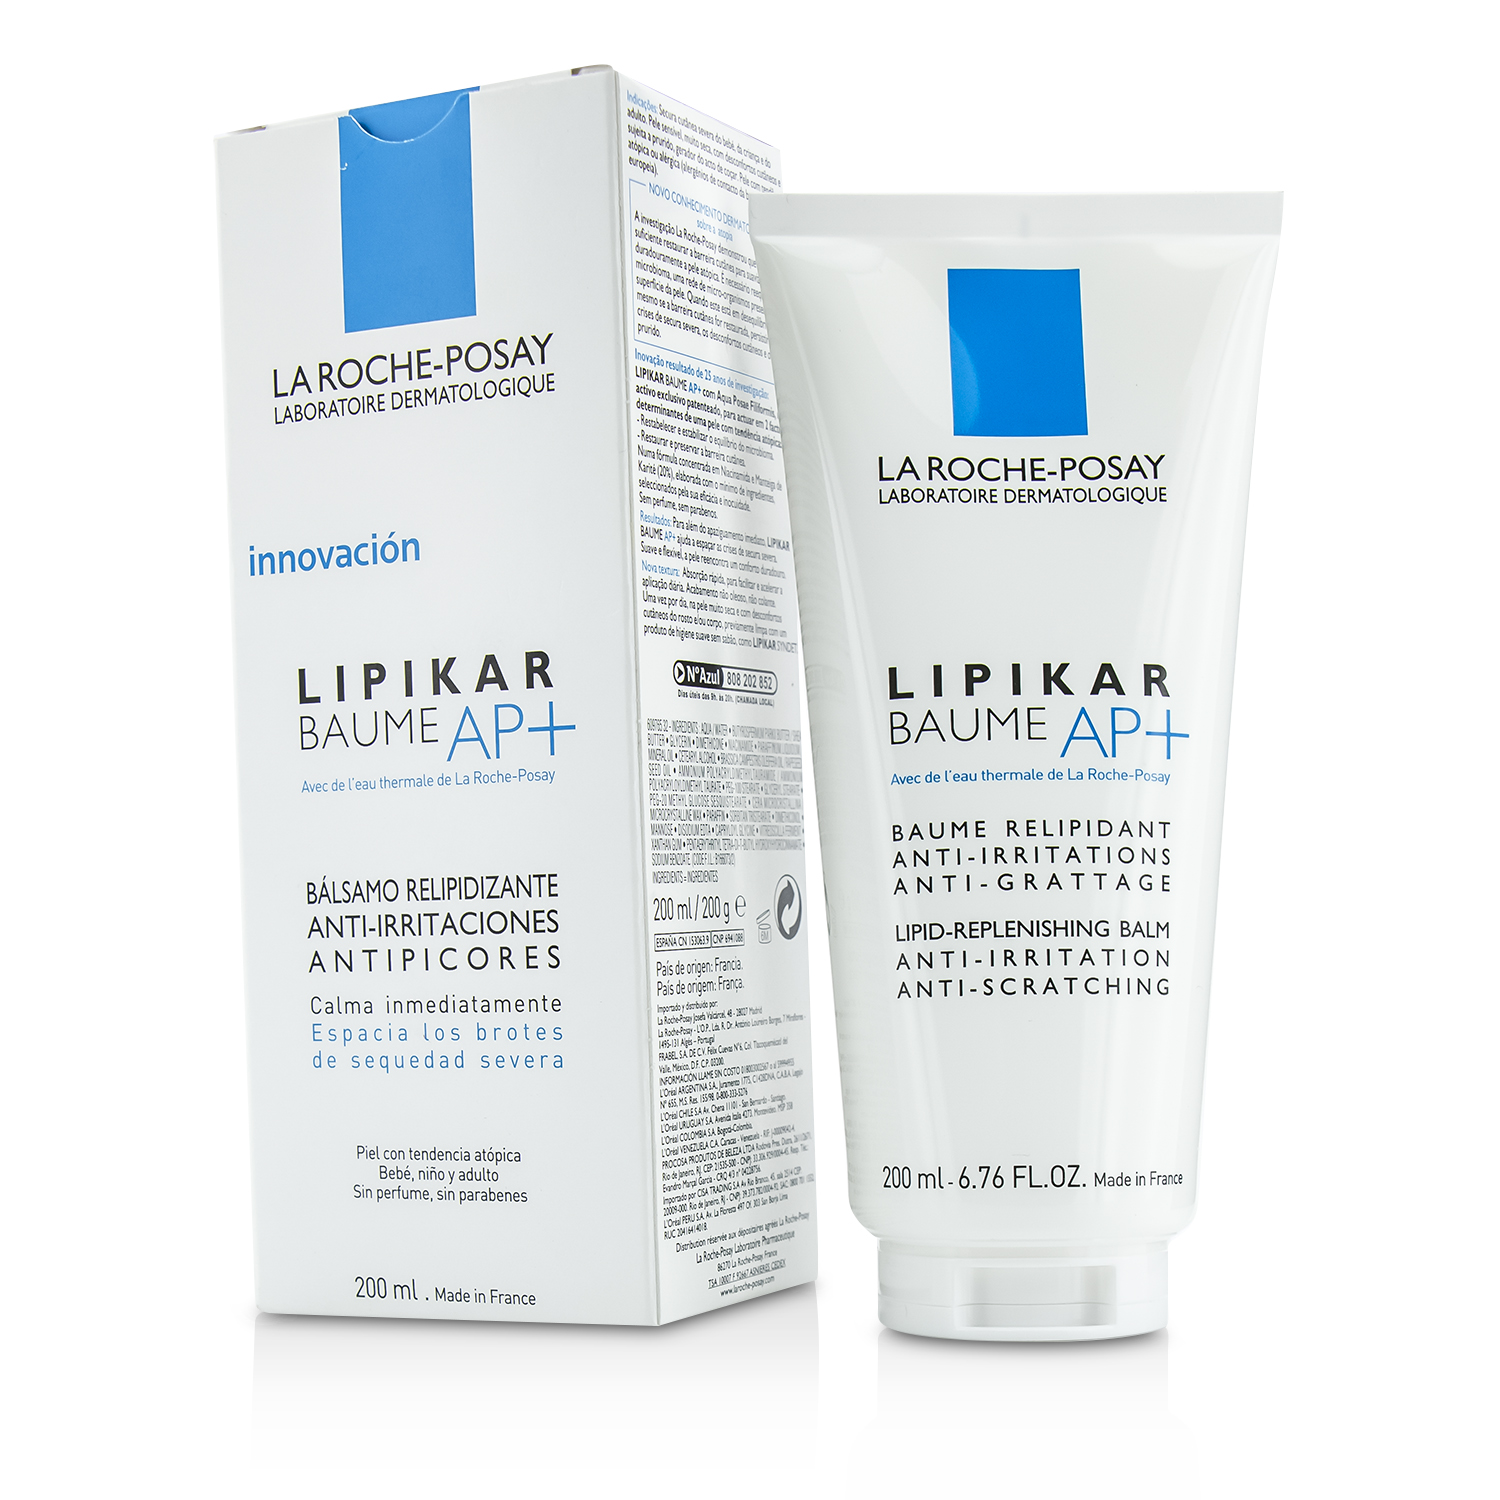 Lipikar Baume AP+ Lipid-Replenishing Balm Anti-Irritation Anti-Scratching La Roche Posay Image